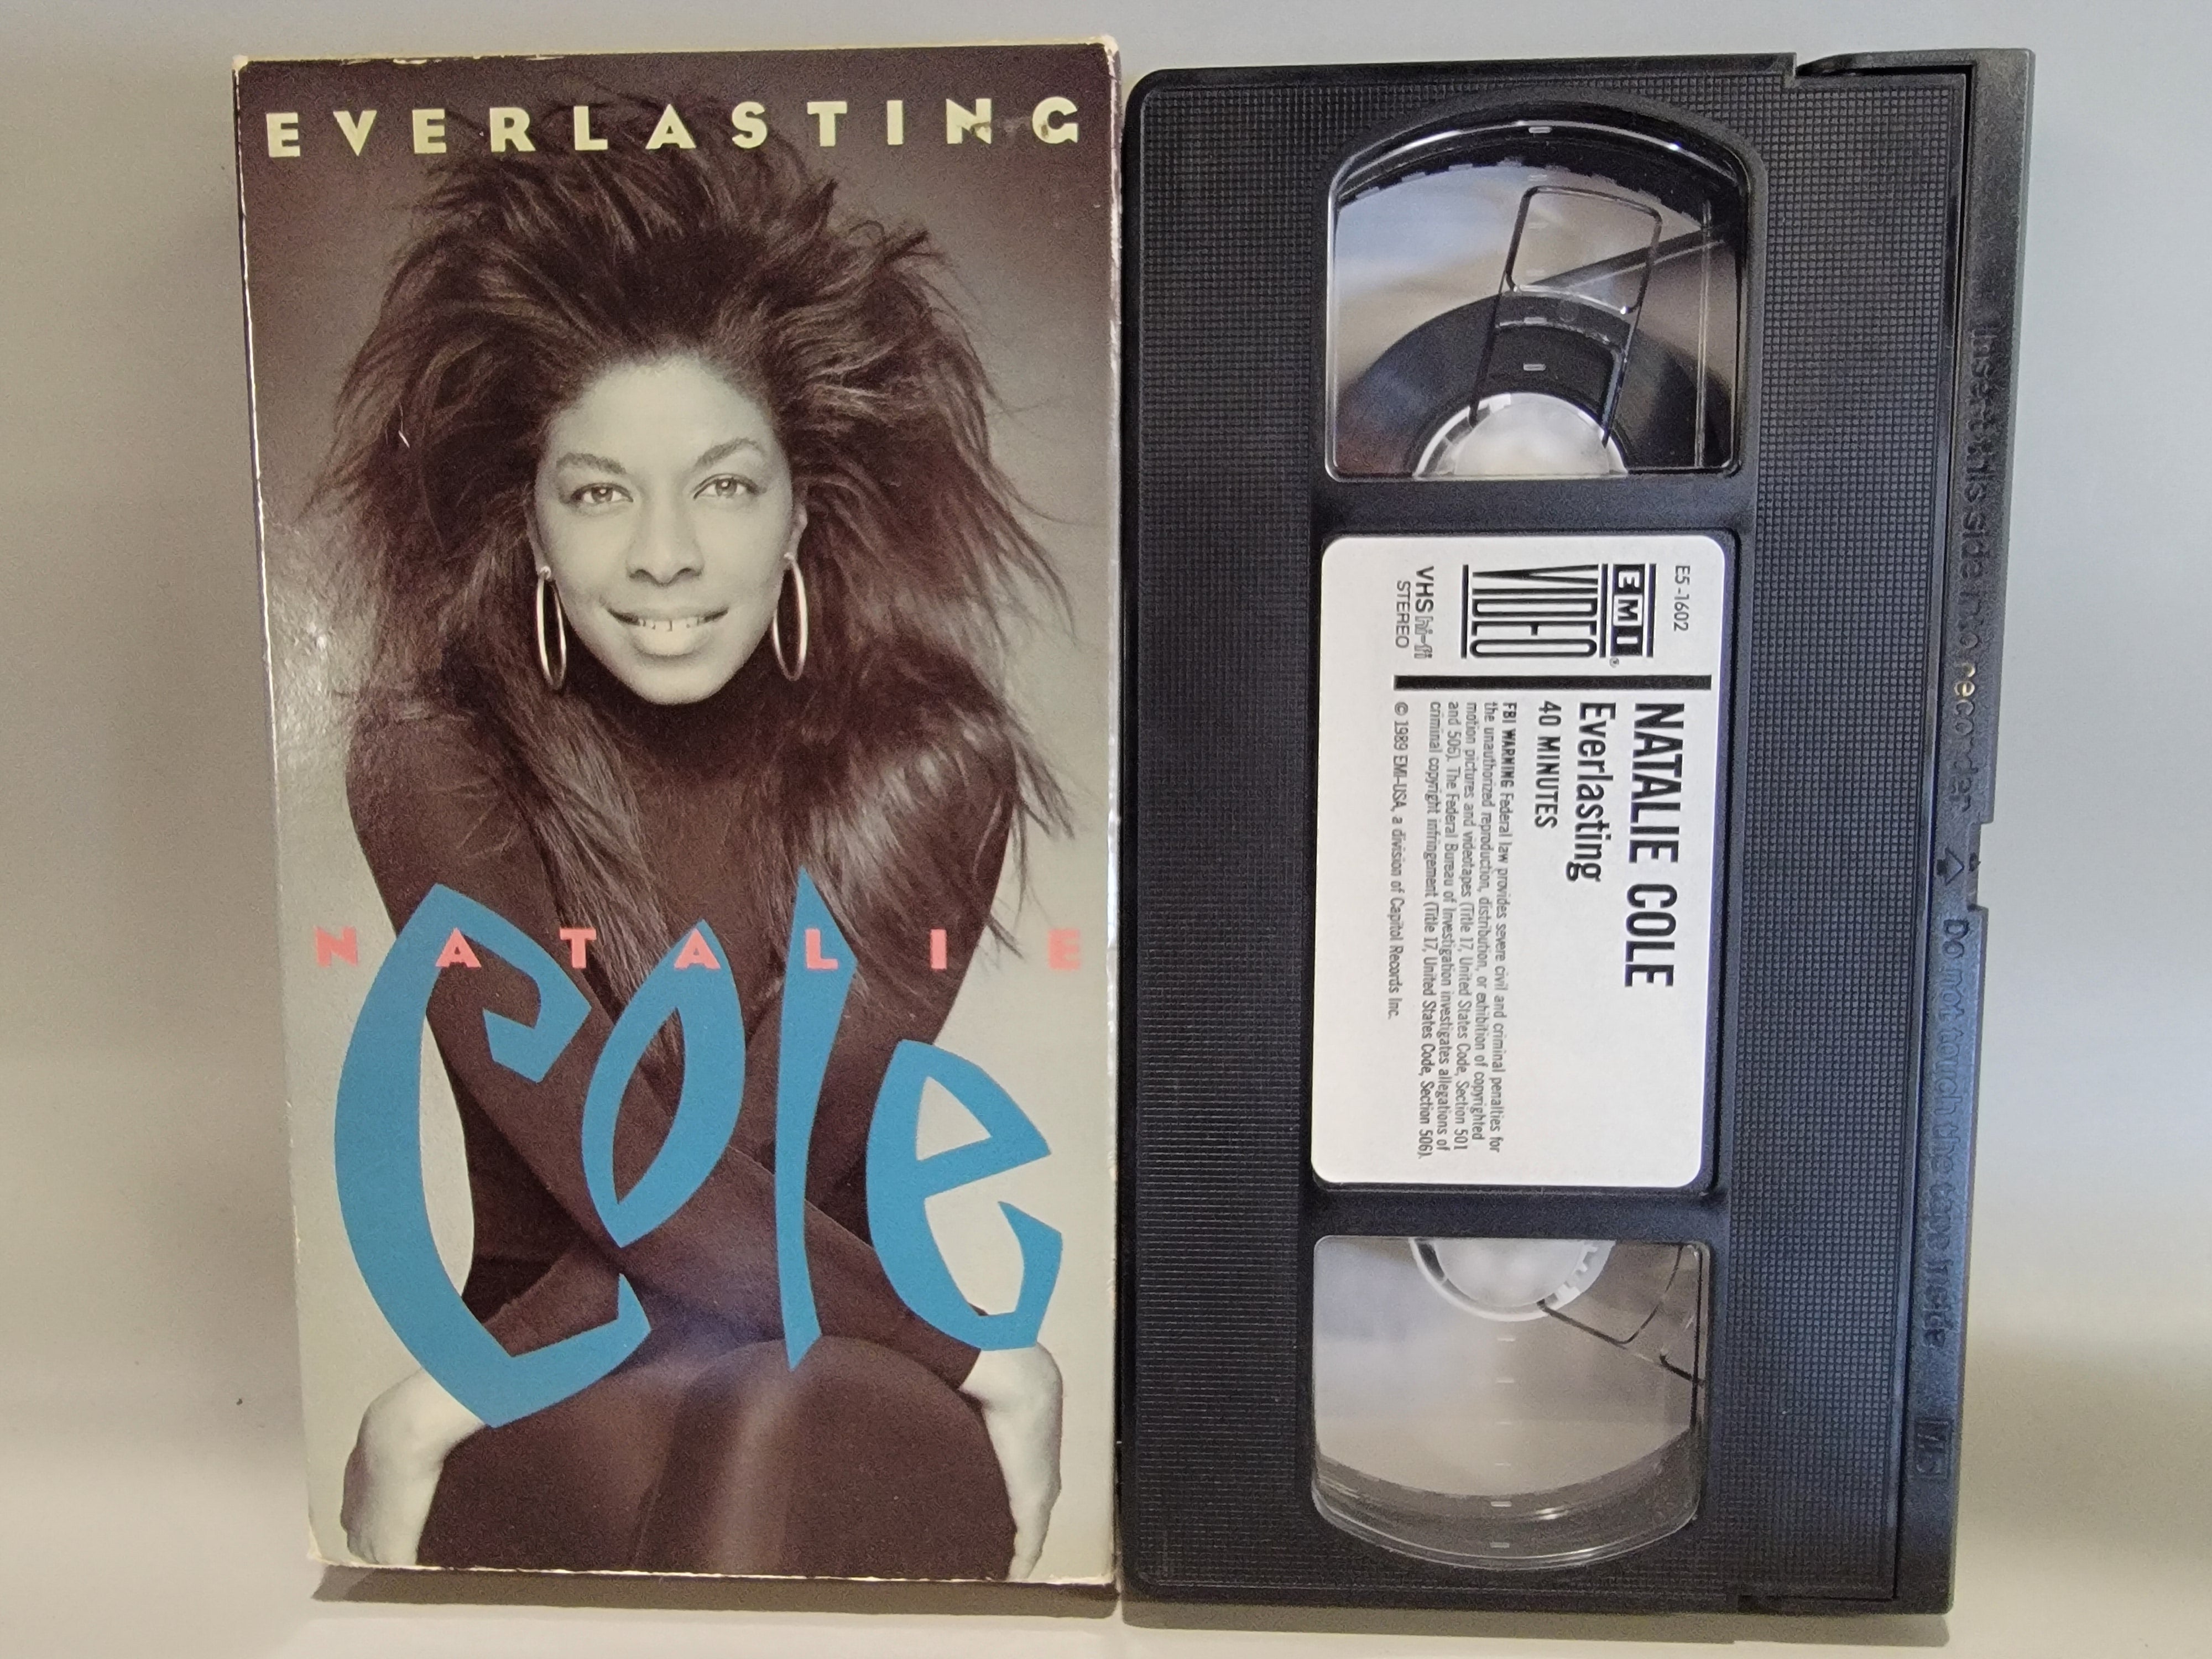 NATALIE COLE: EVERLASTING VHS [USED]